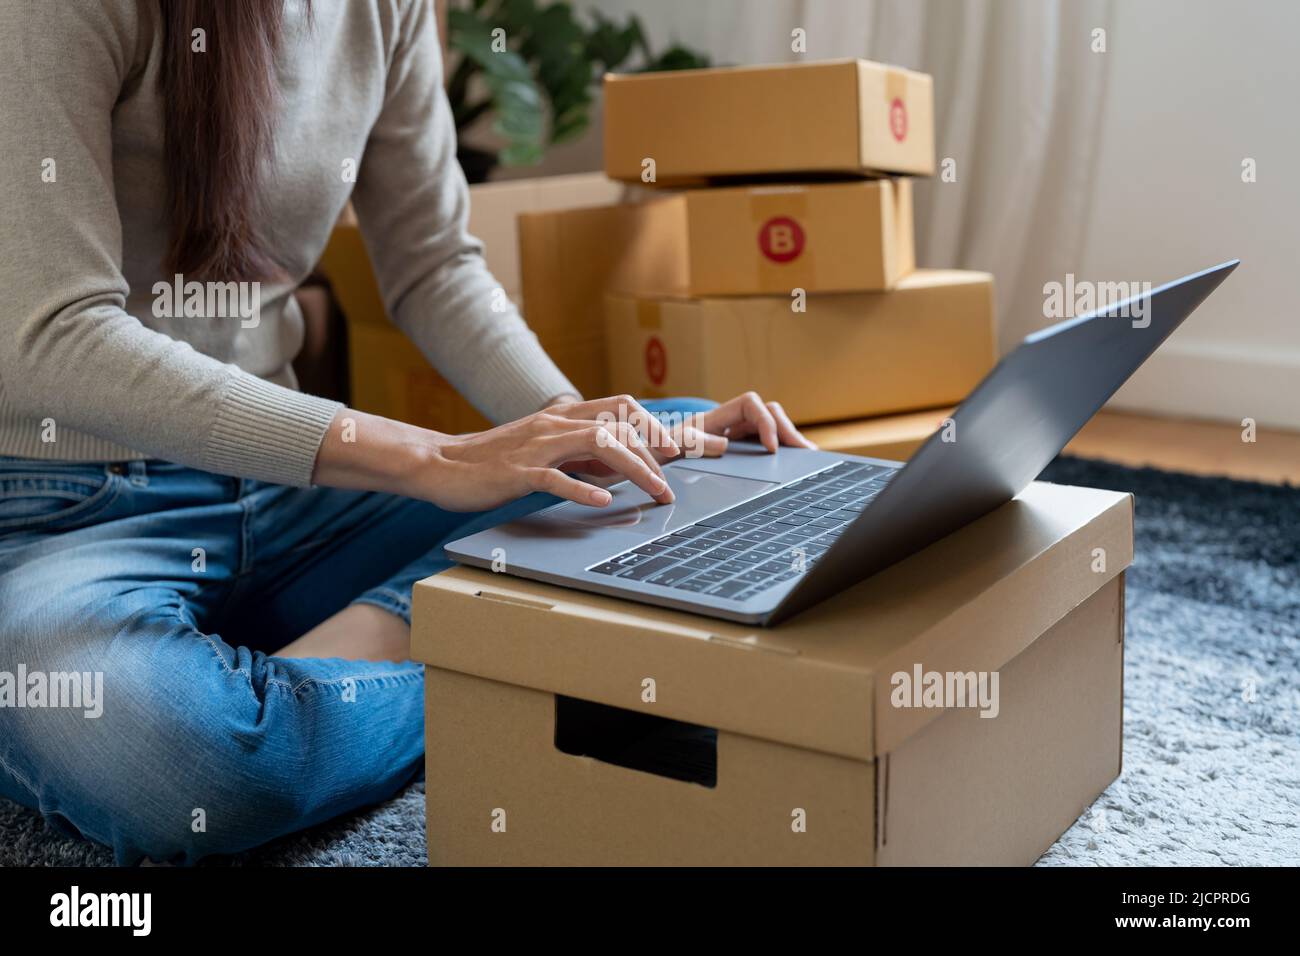 Starten Sie den erfolgreichen Inhaber eines kleinen Unternehmens, arbeiten Sie von zu Hause aus mit einem Laptop und einer Online-Bestellung. Stockfoto